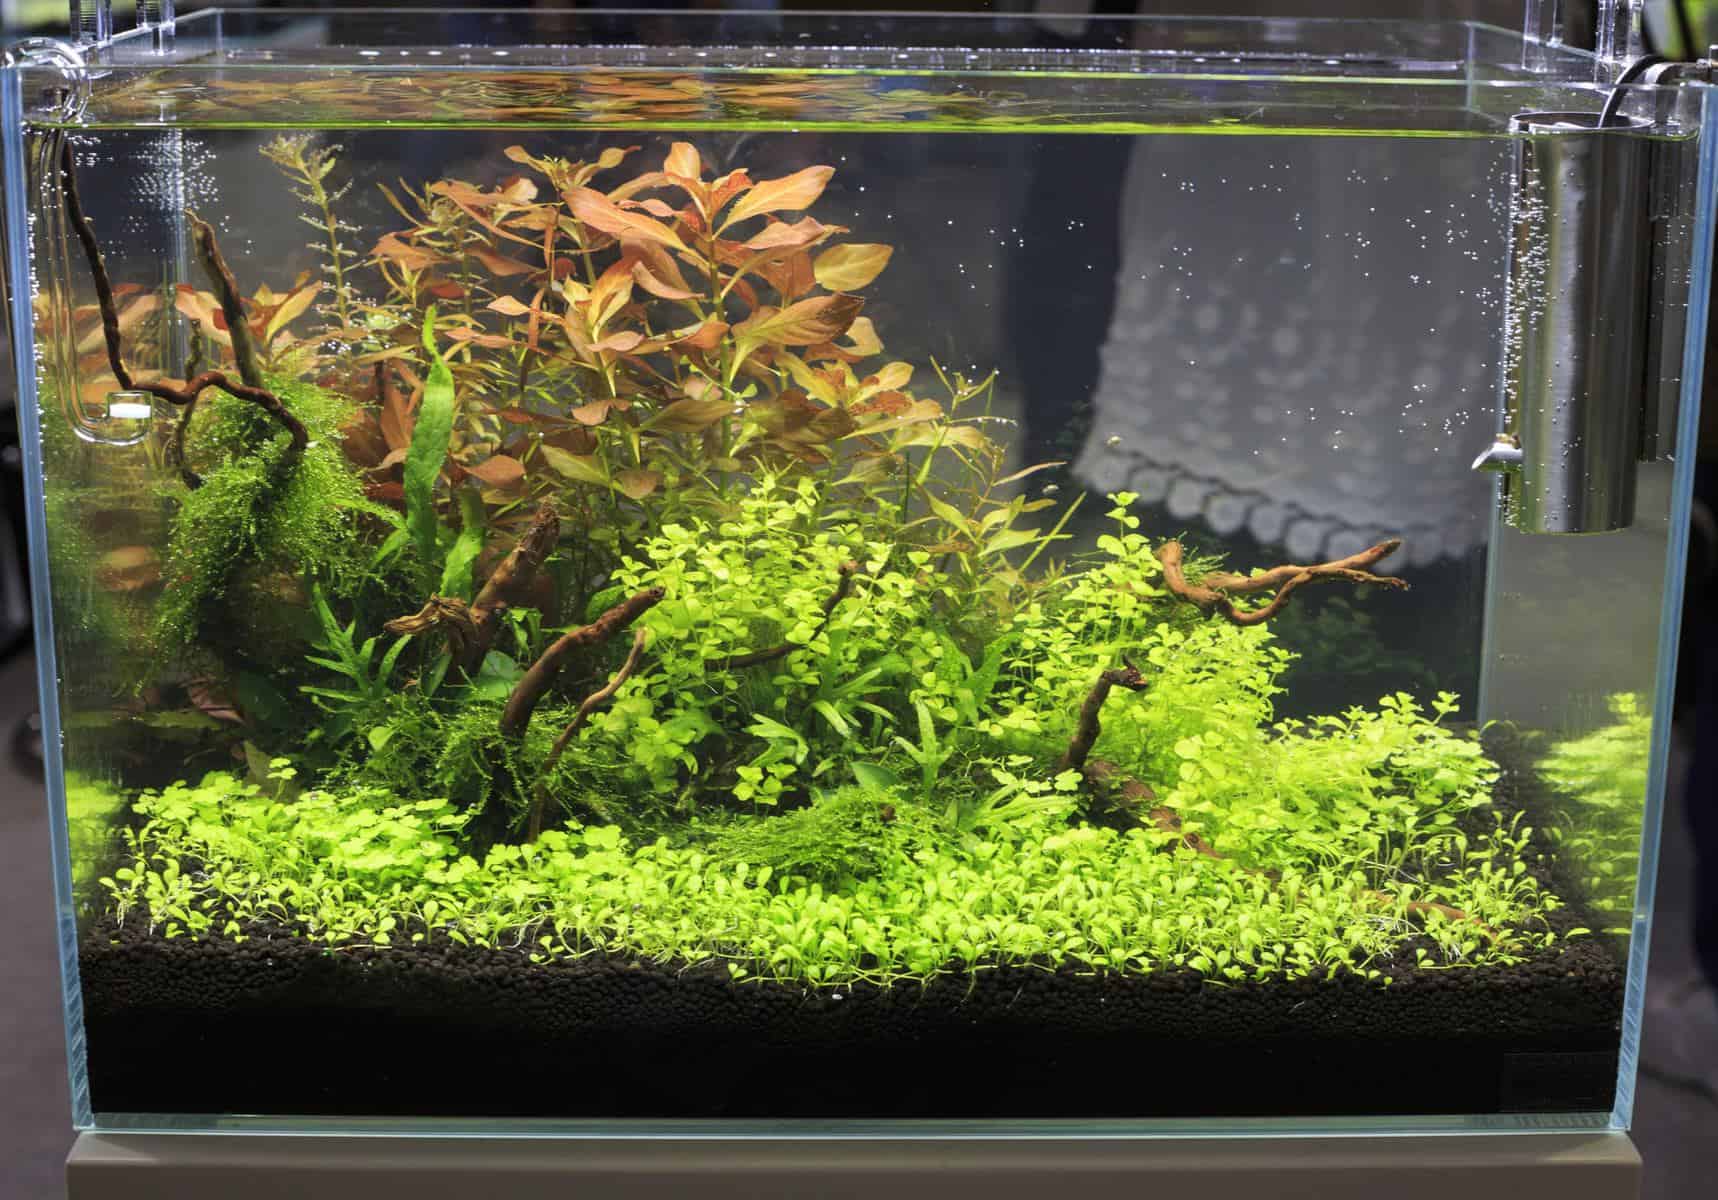 10 gallon freshwater aquarium fish tank